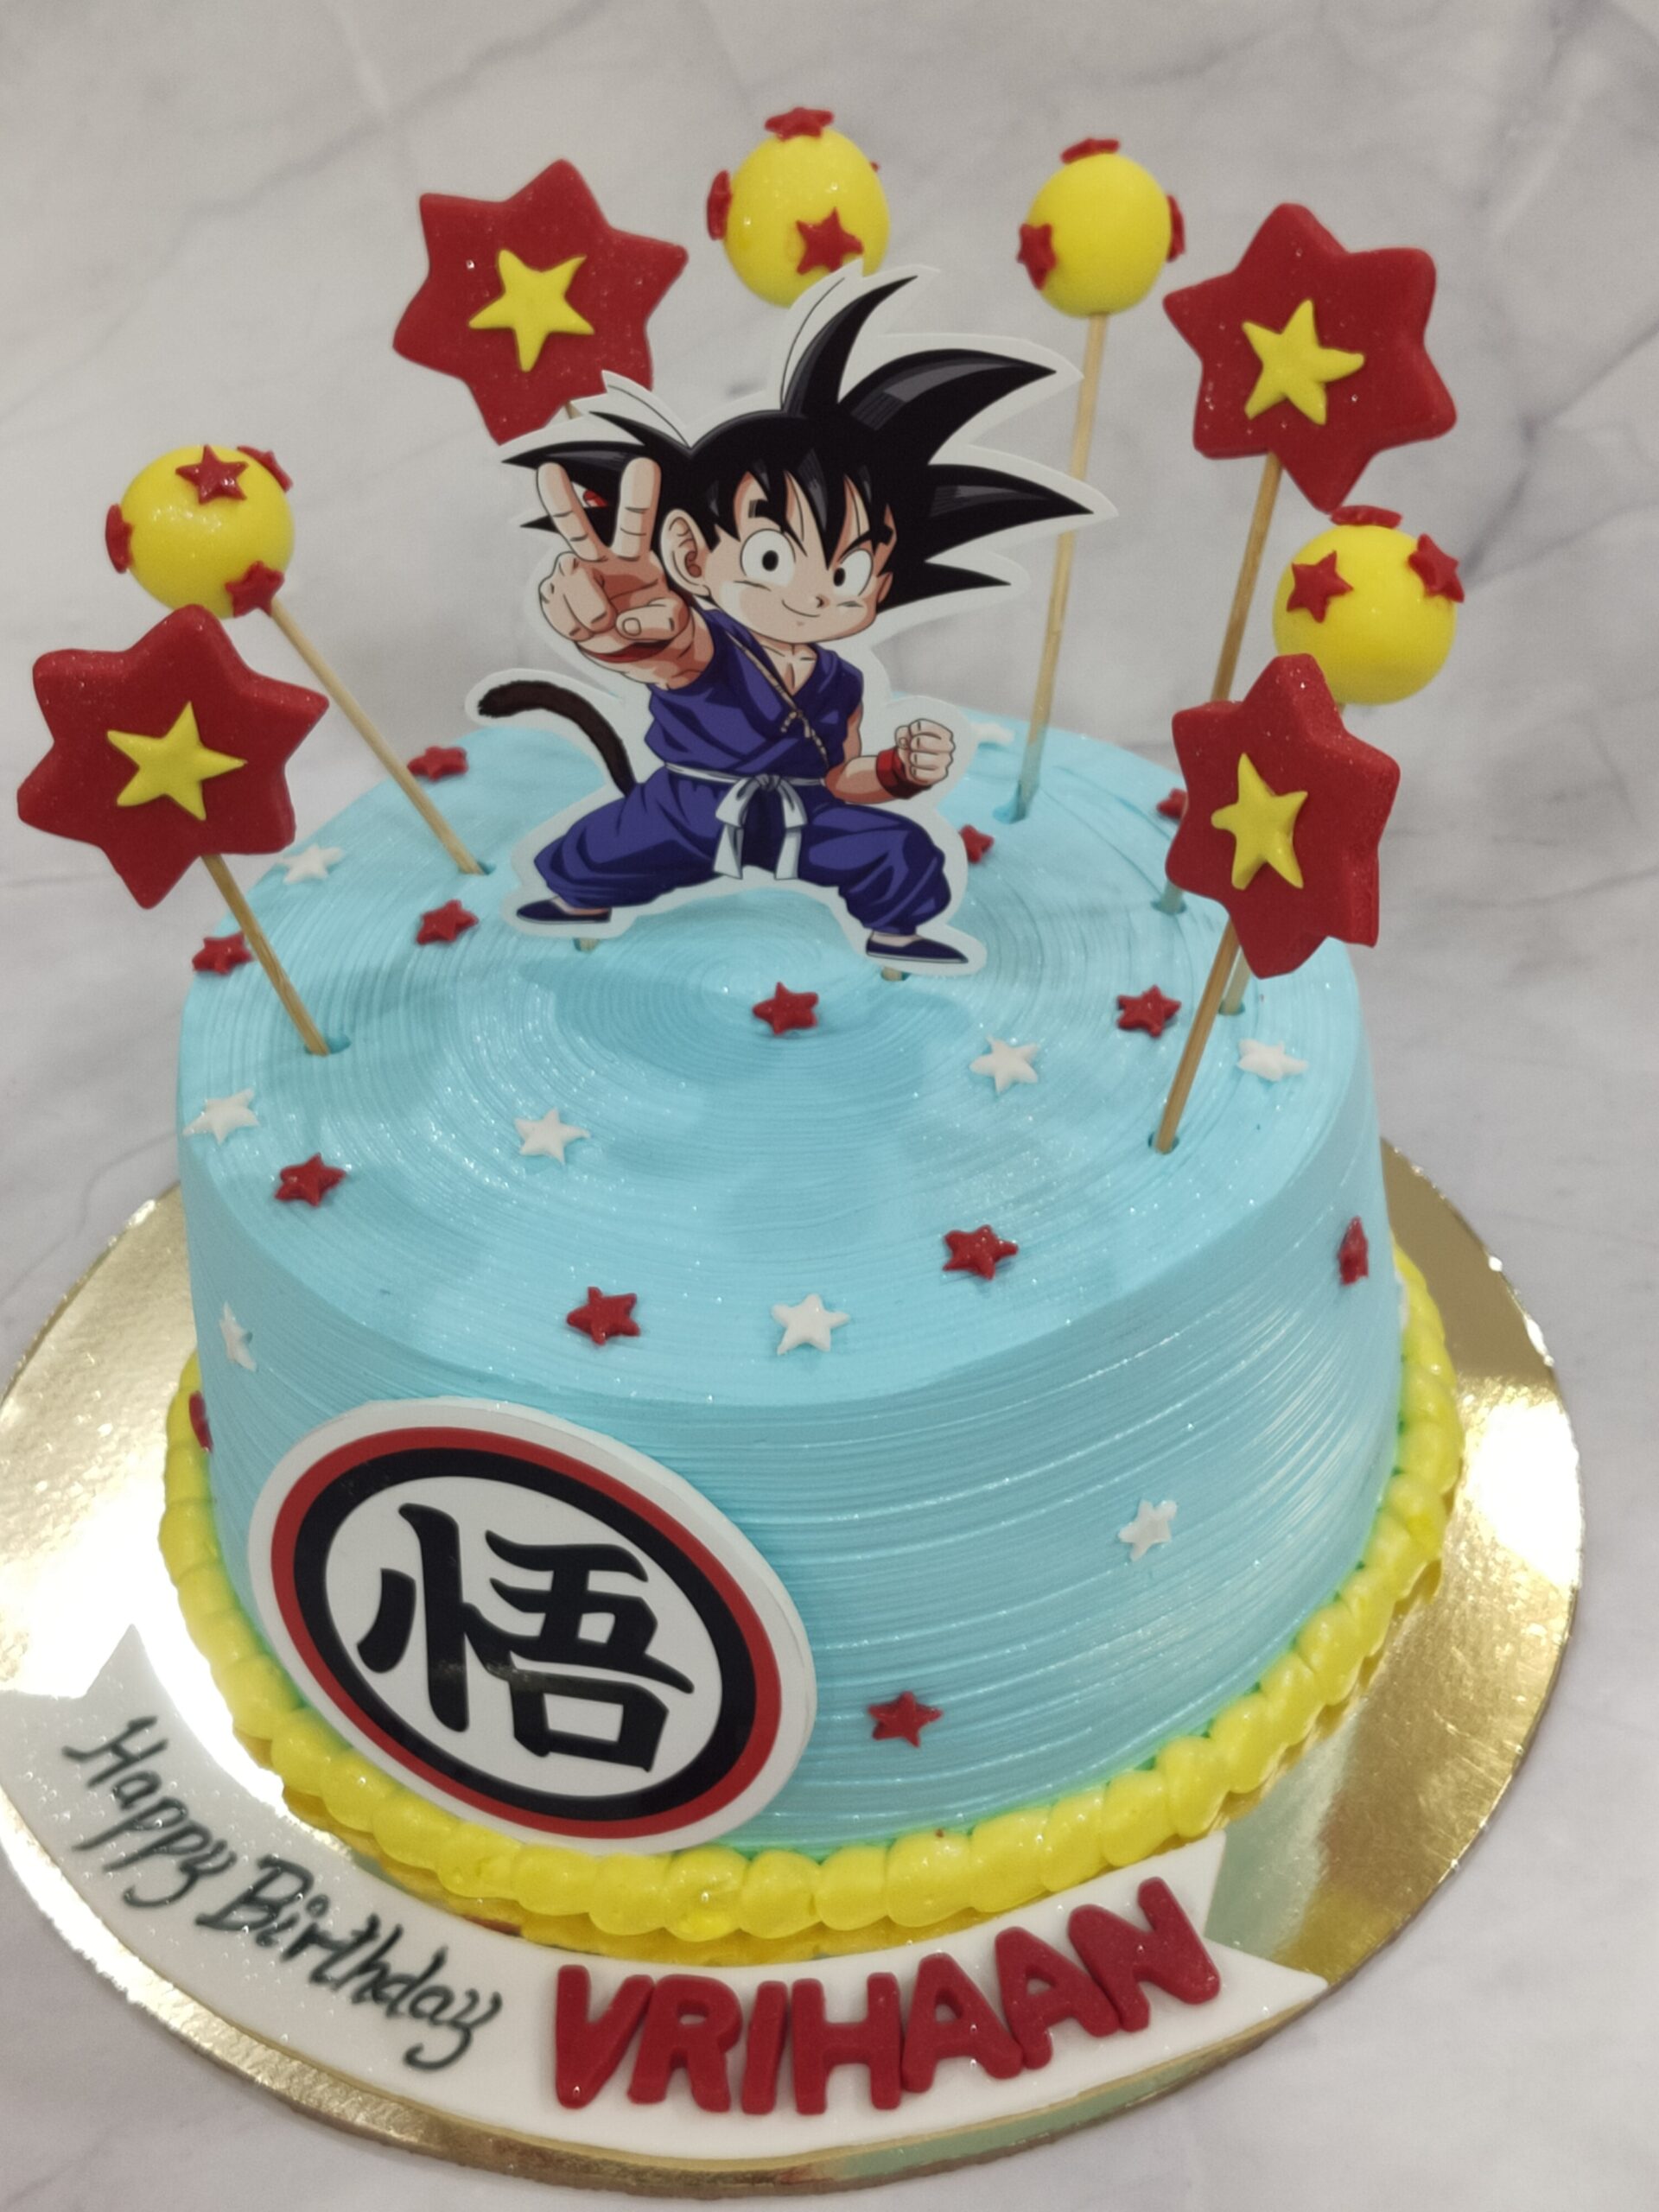 Fondant Celebration Cakes | Character cakes, Celebration cakes, Birthday  cake kids